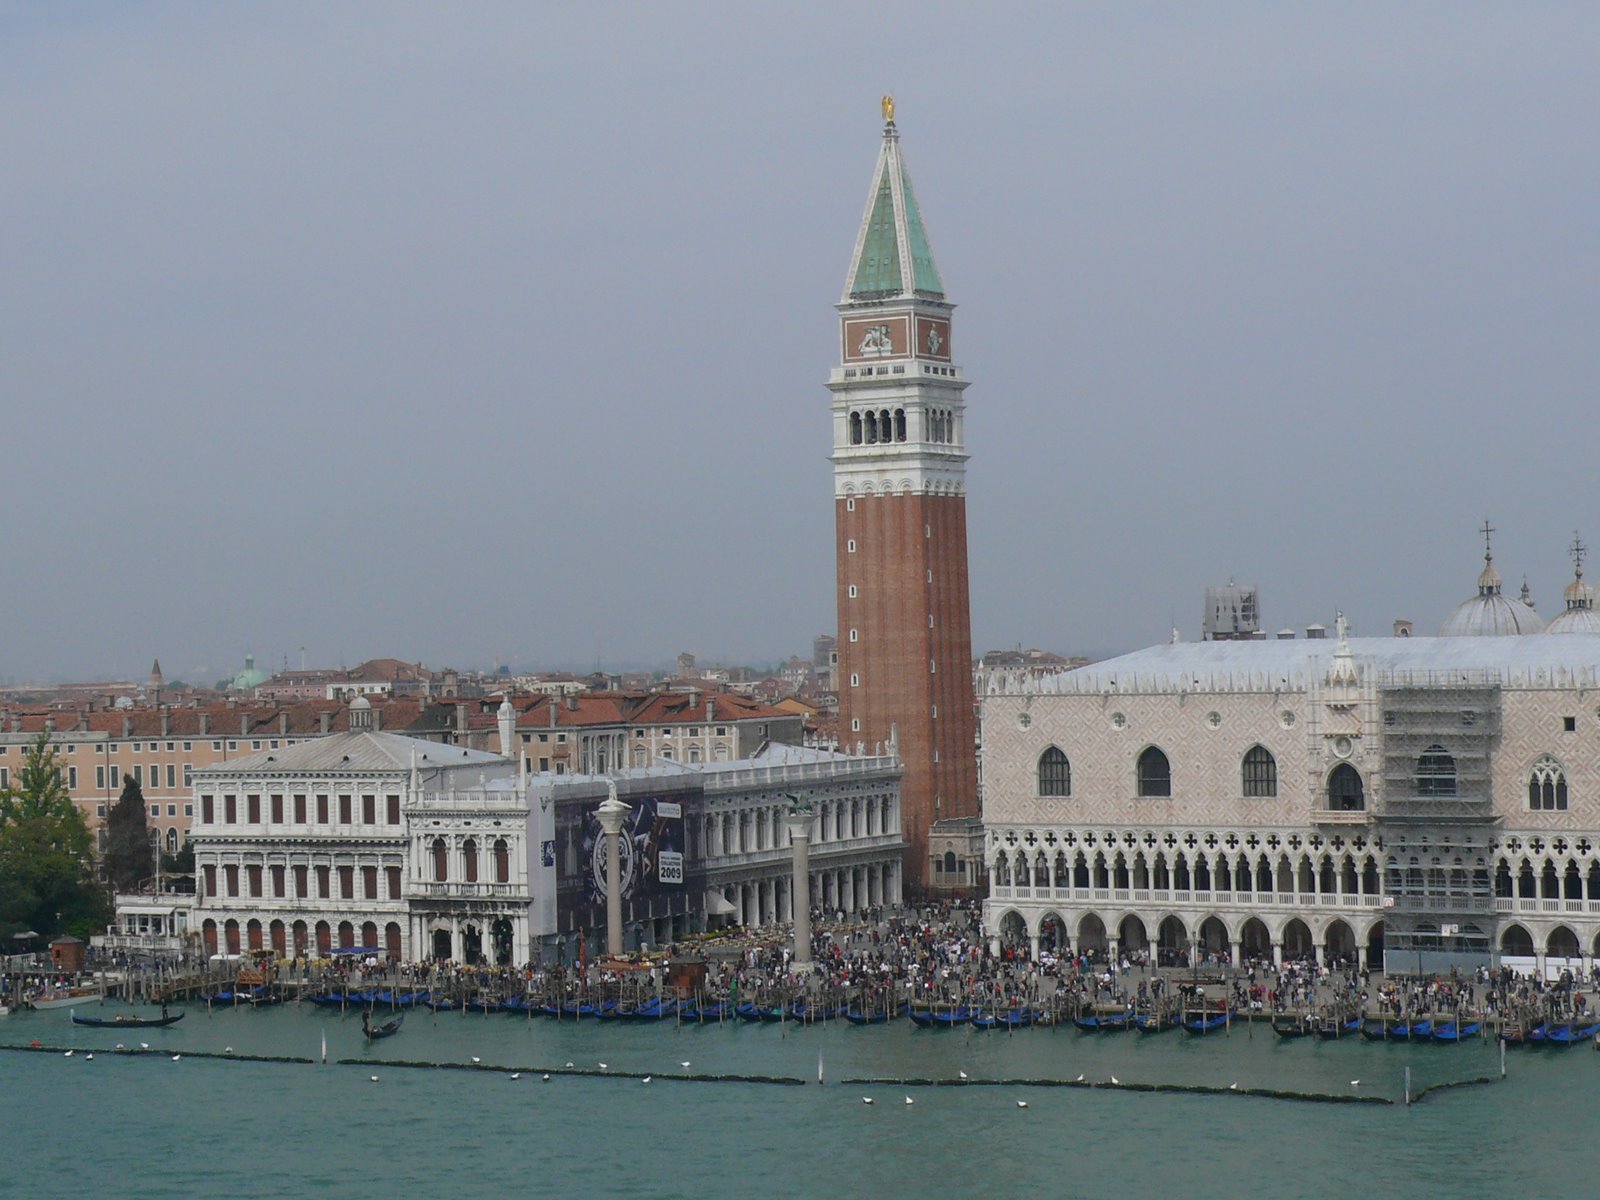 Venecia 2009